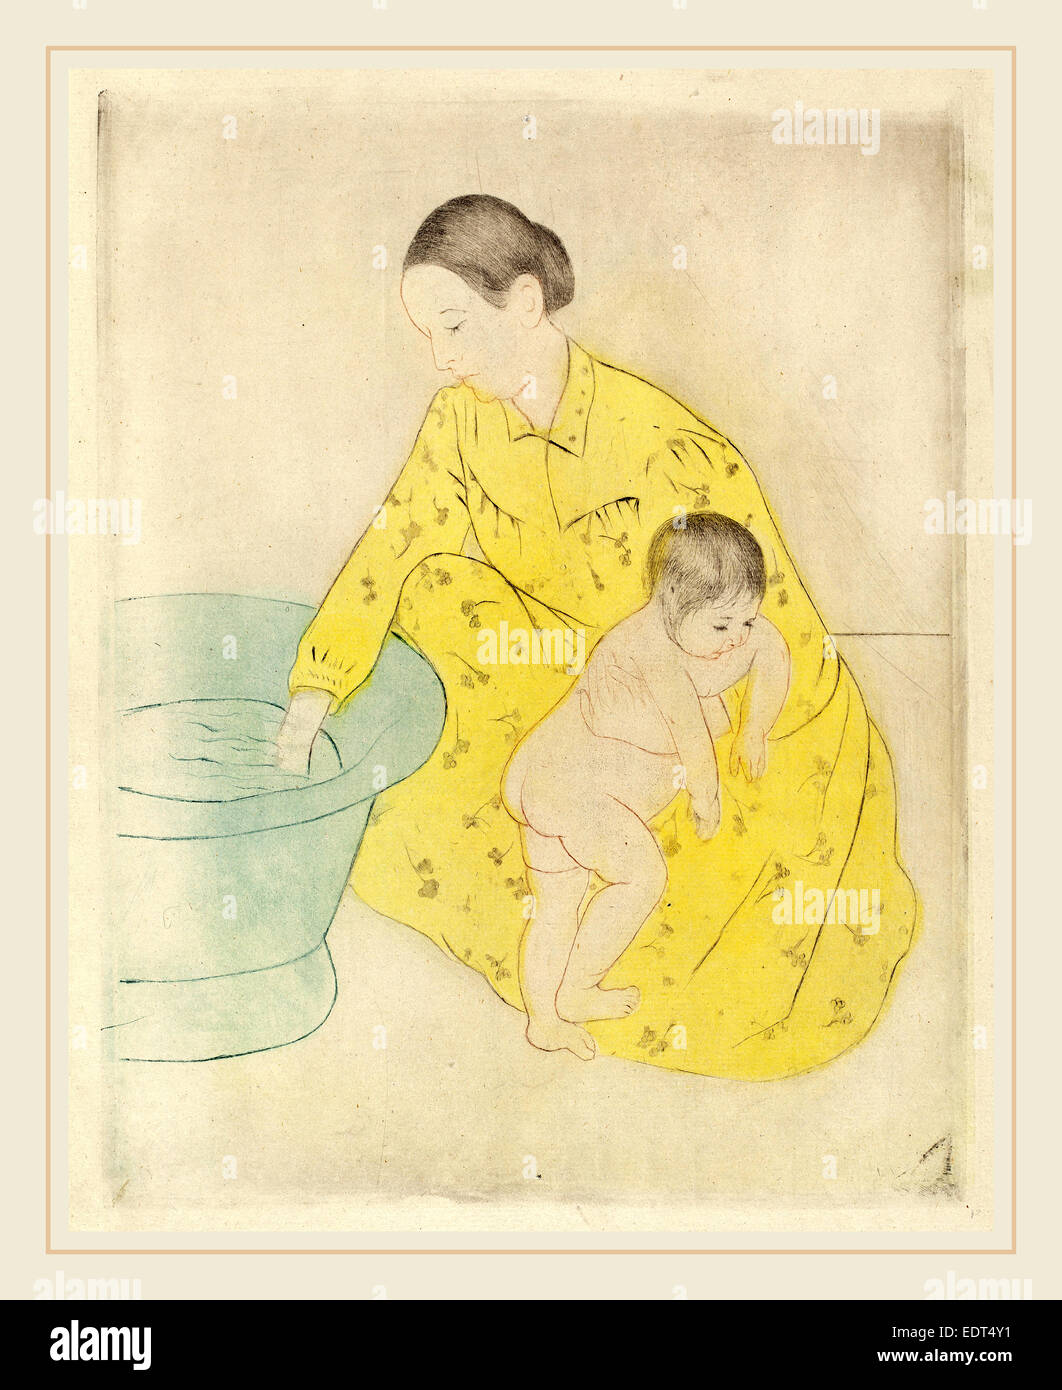 Mary Cassatt, la baignoire, cuisine américaine, 1844-1926, ch. 1891, pointe sèche et eau-forte en sol souple, bleu, jaune, noir et sanguine Banque D'Images